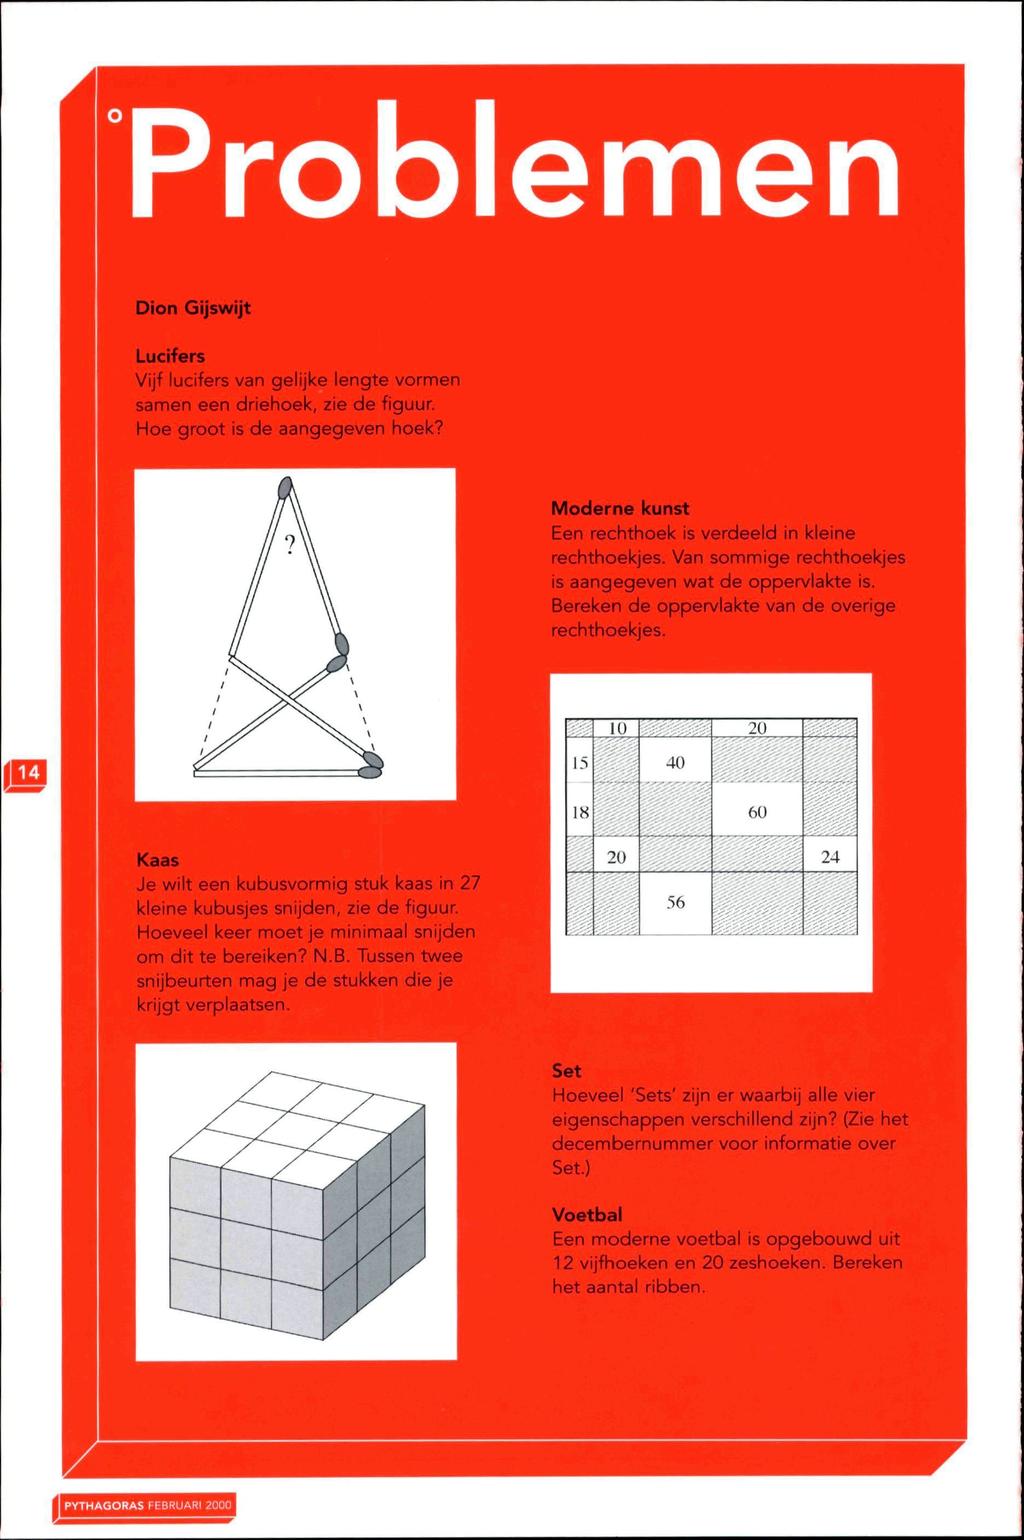 Problemen Dion Gijswijt ucifers Vijf lucifers van gelijke lengte vormen samen een driehoek, zie de figuur. Hoe groot is de aangegeven hoek?